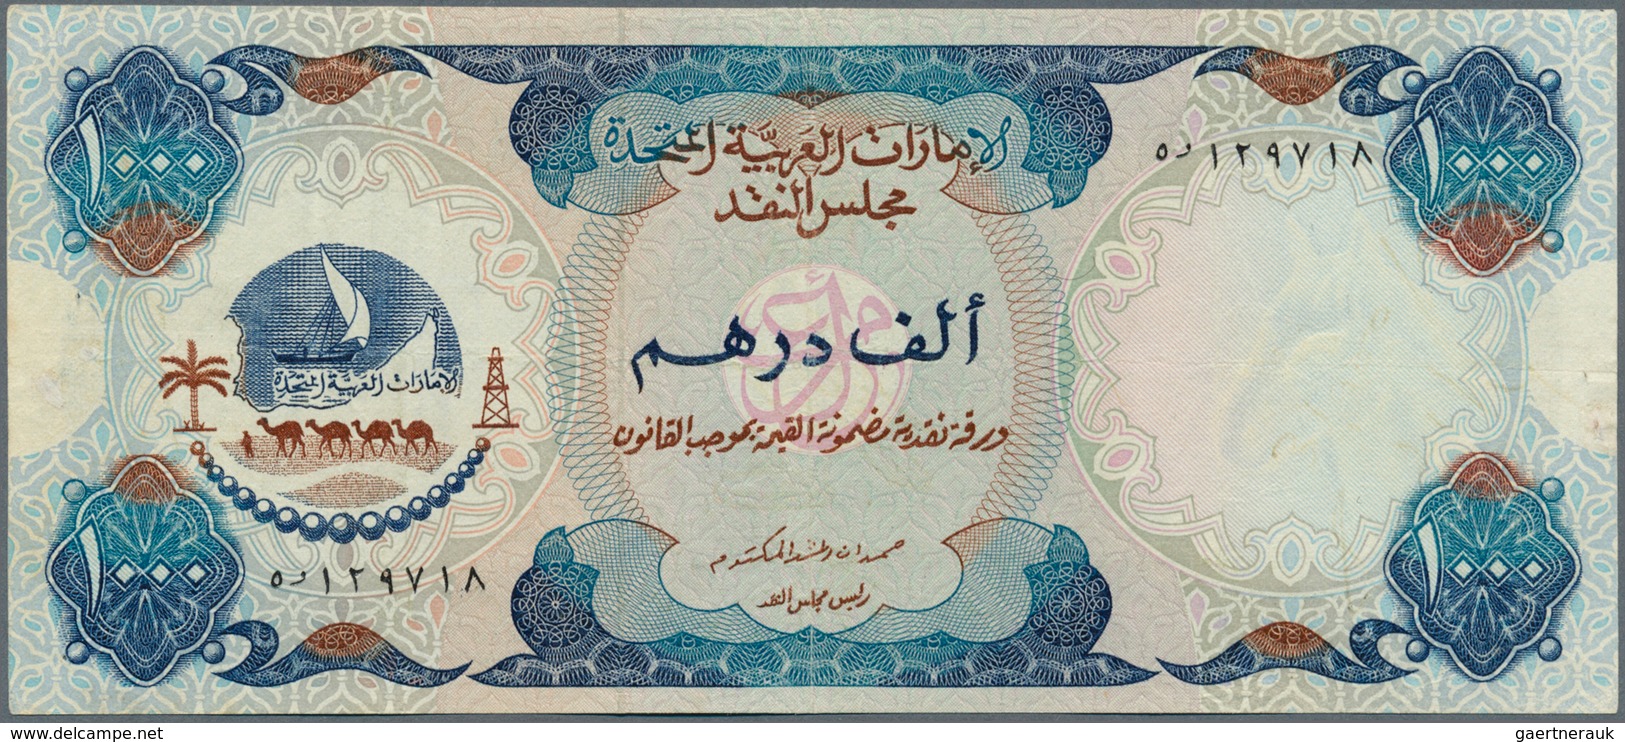 02574 United Arab Emirates / Vereinigte Arabische Emirate: Rare Note 1000 Dirhams ND(1976) P. 6, Light Fol - Verenigde Arabische Emiraten